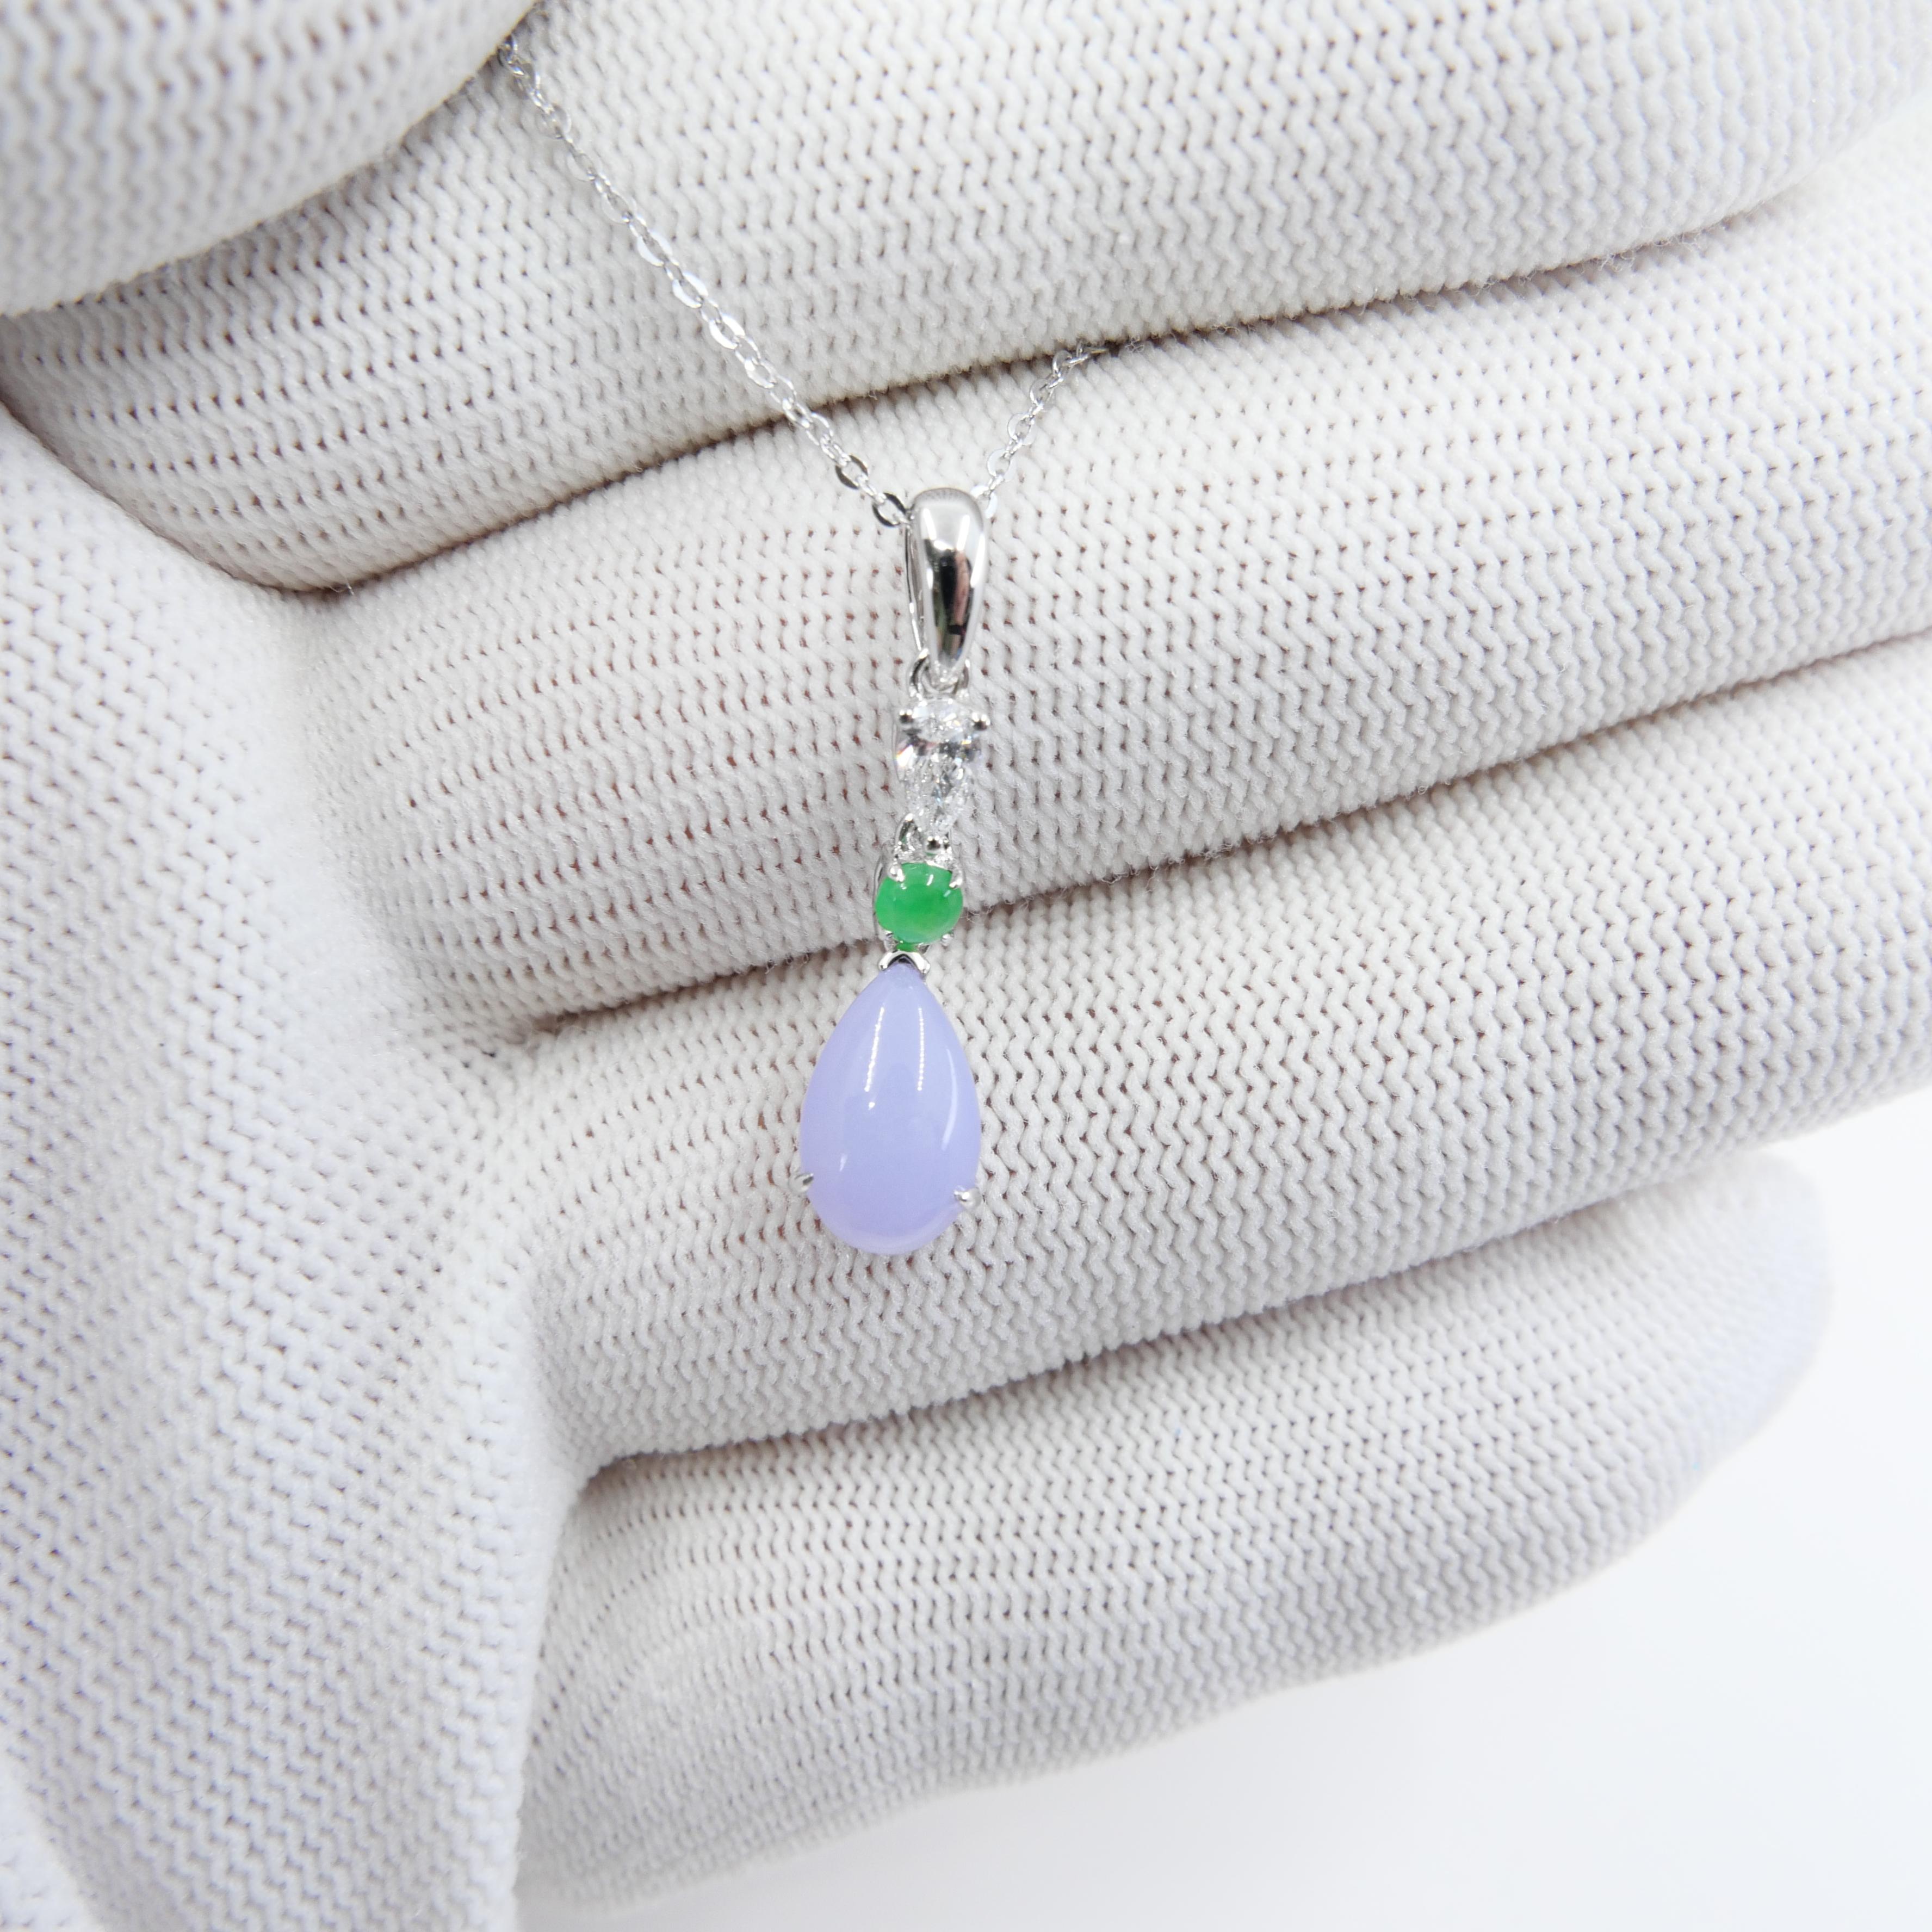 Certified 1.95 Carats Lavender Jade & Pear Cut Diamond Drop Pendant Necklace For Sale 7